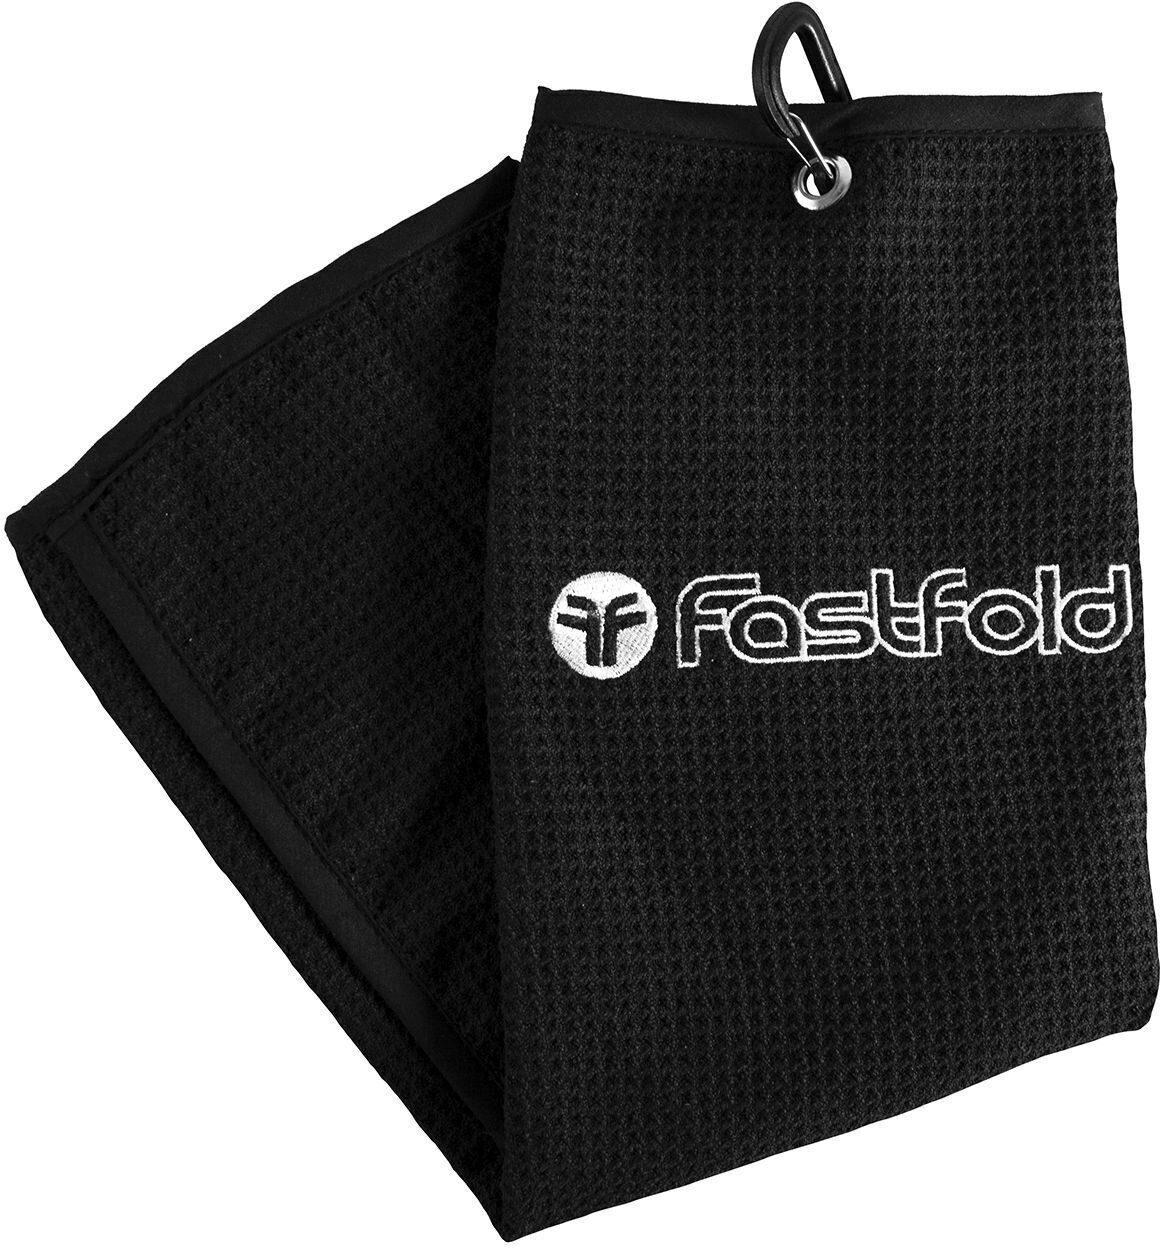 Handdoek Fastfold Towel Handdoek